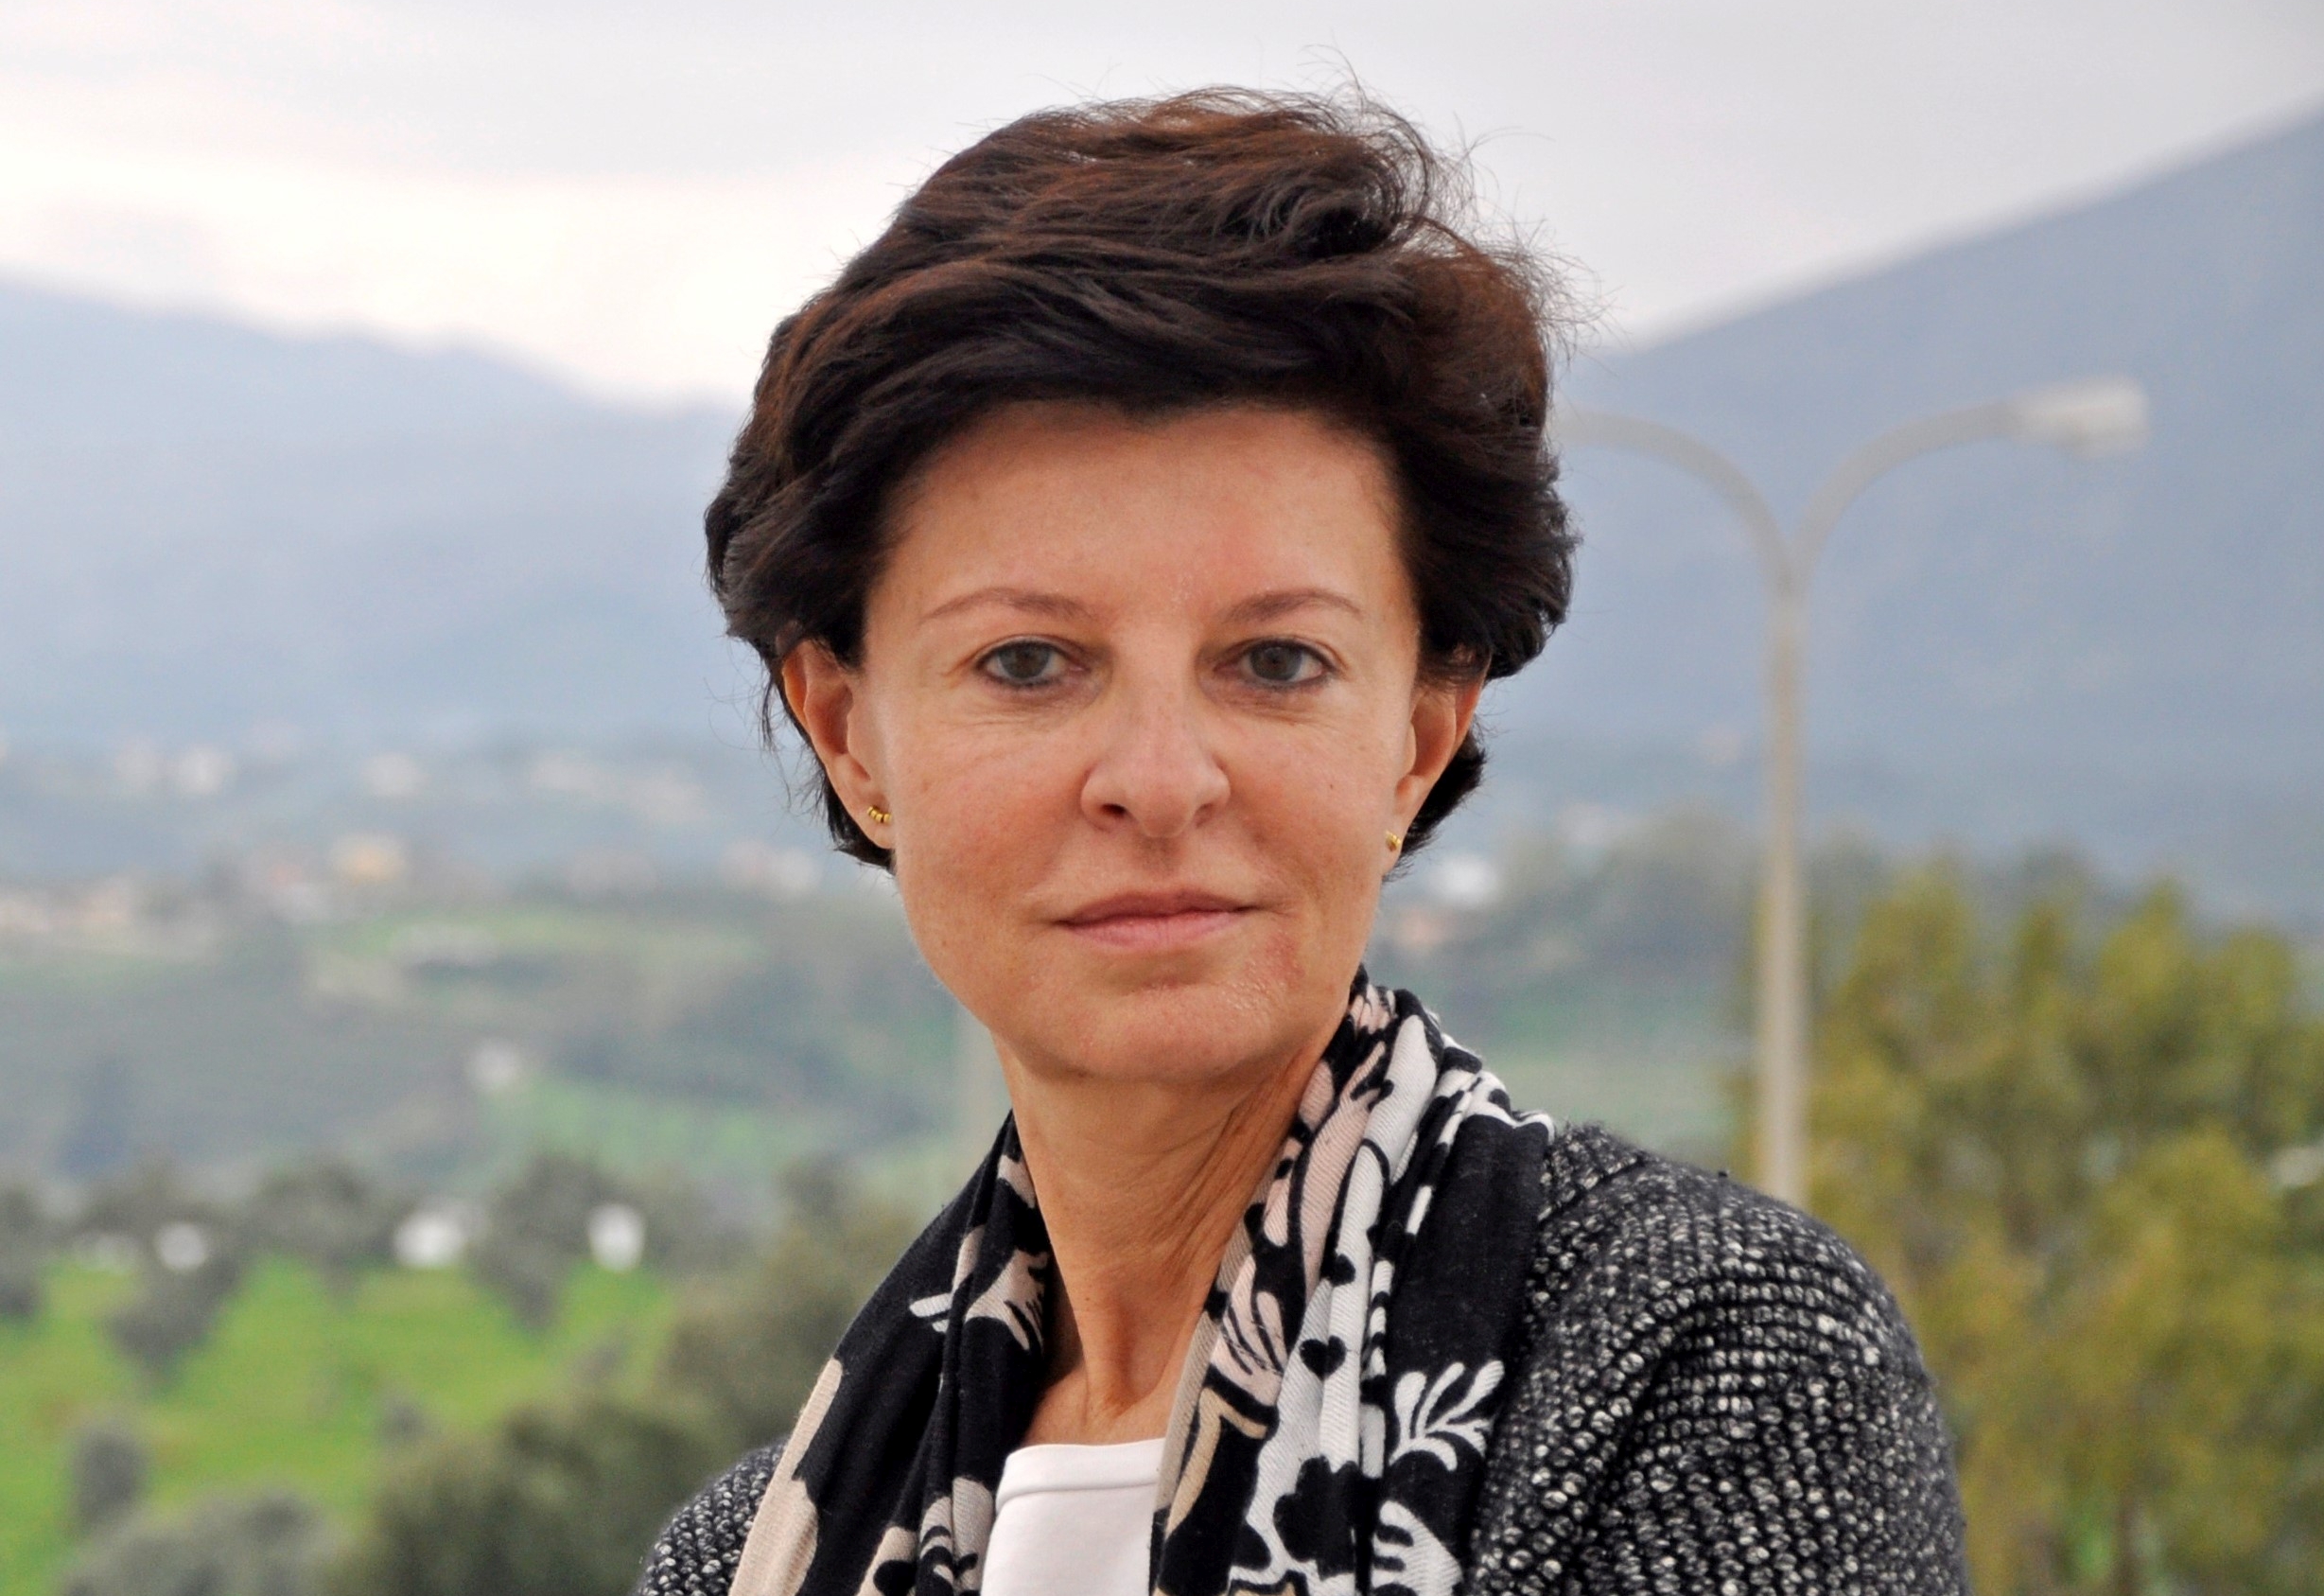 Ηλέκτρα Γκιζελή: Ποια είναι η ερευνήτρια που εξελέγη μέλος του Ευρωπαϊκού Οργανισμού Μοριακής Βιολογίας